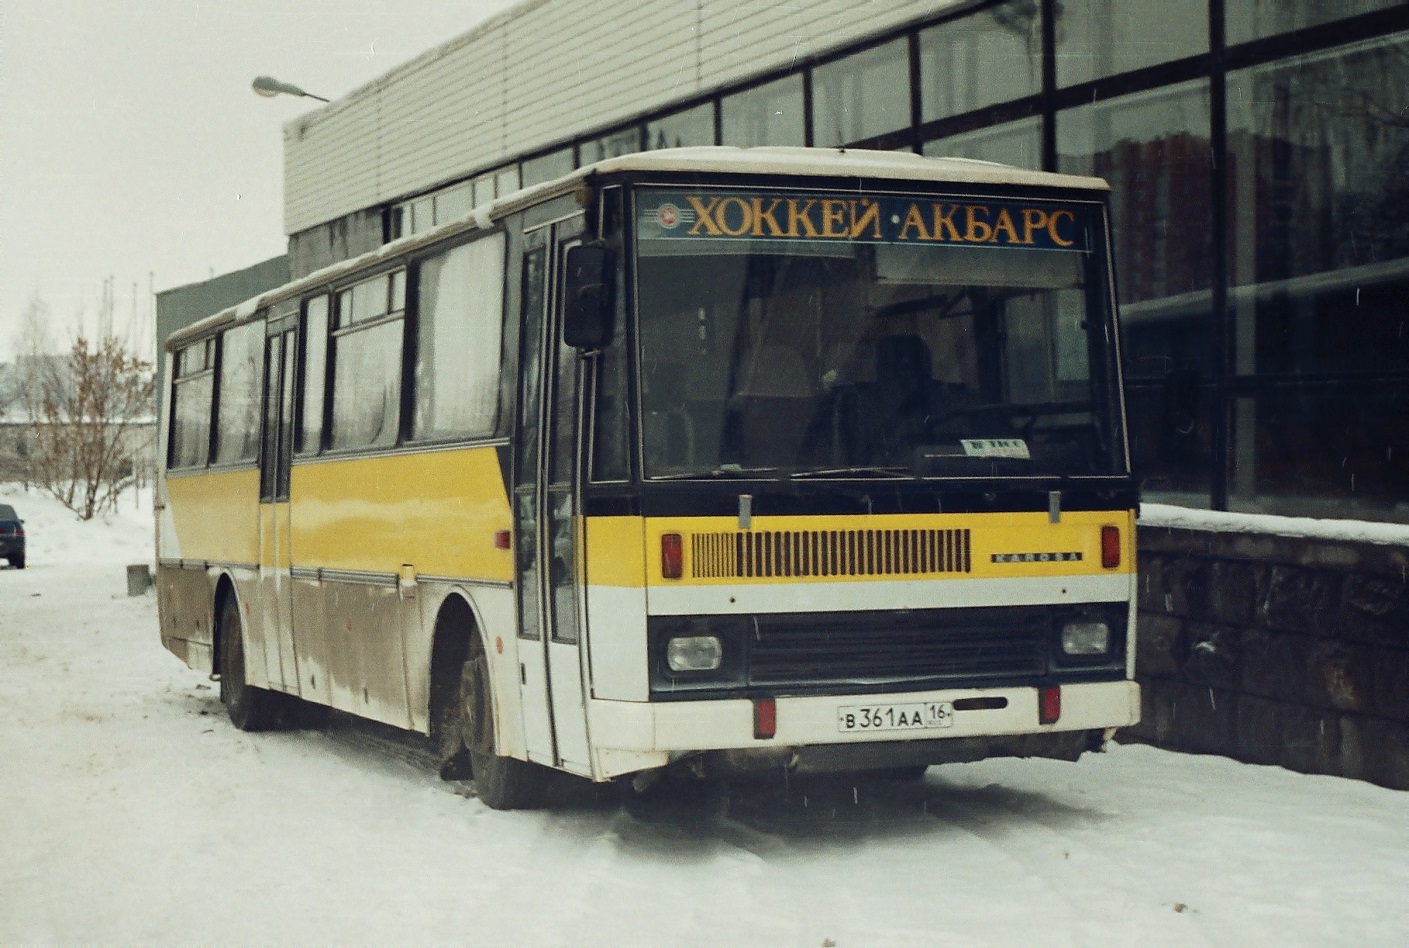 Kazan, Karosa C735 # В 361 АА 16